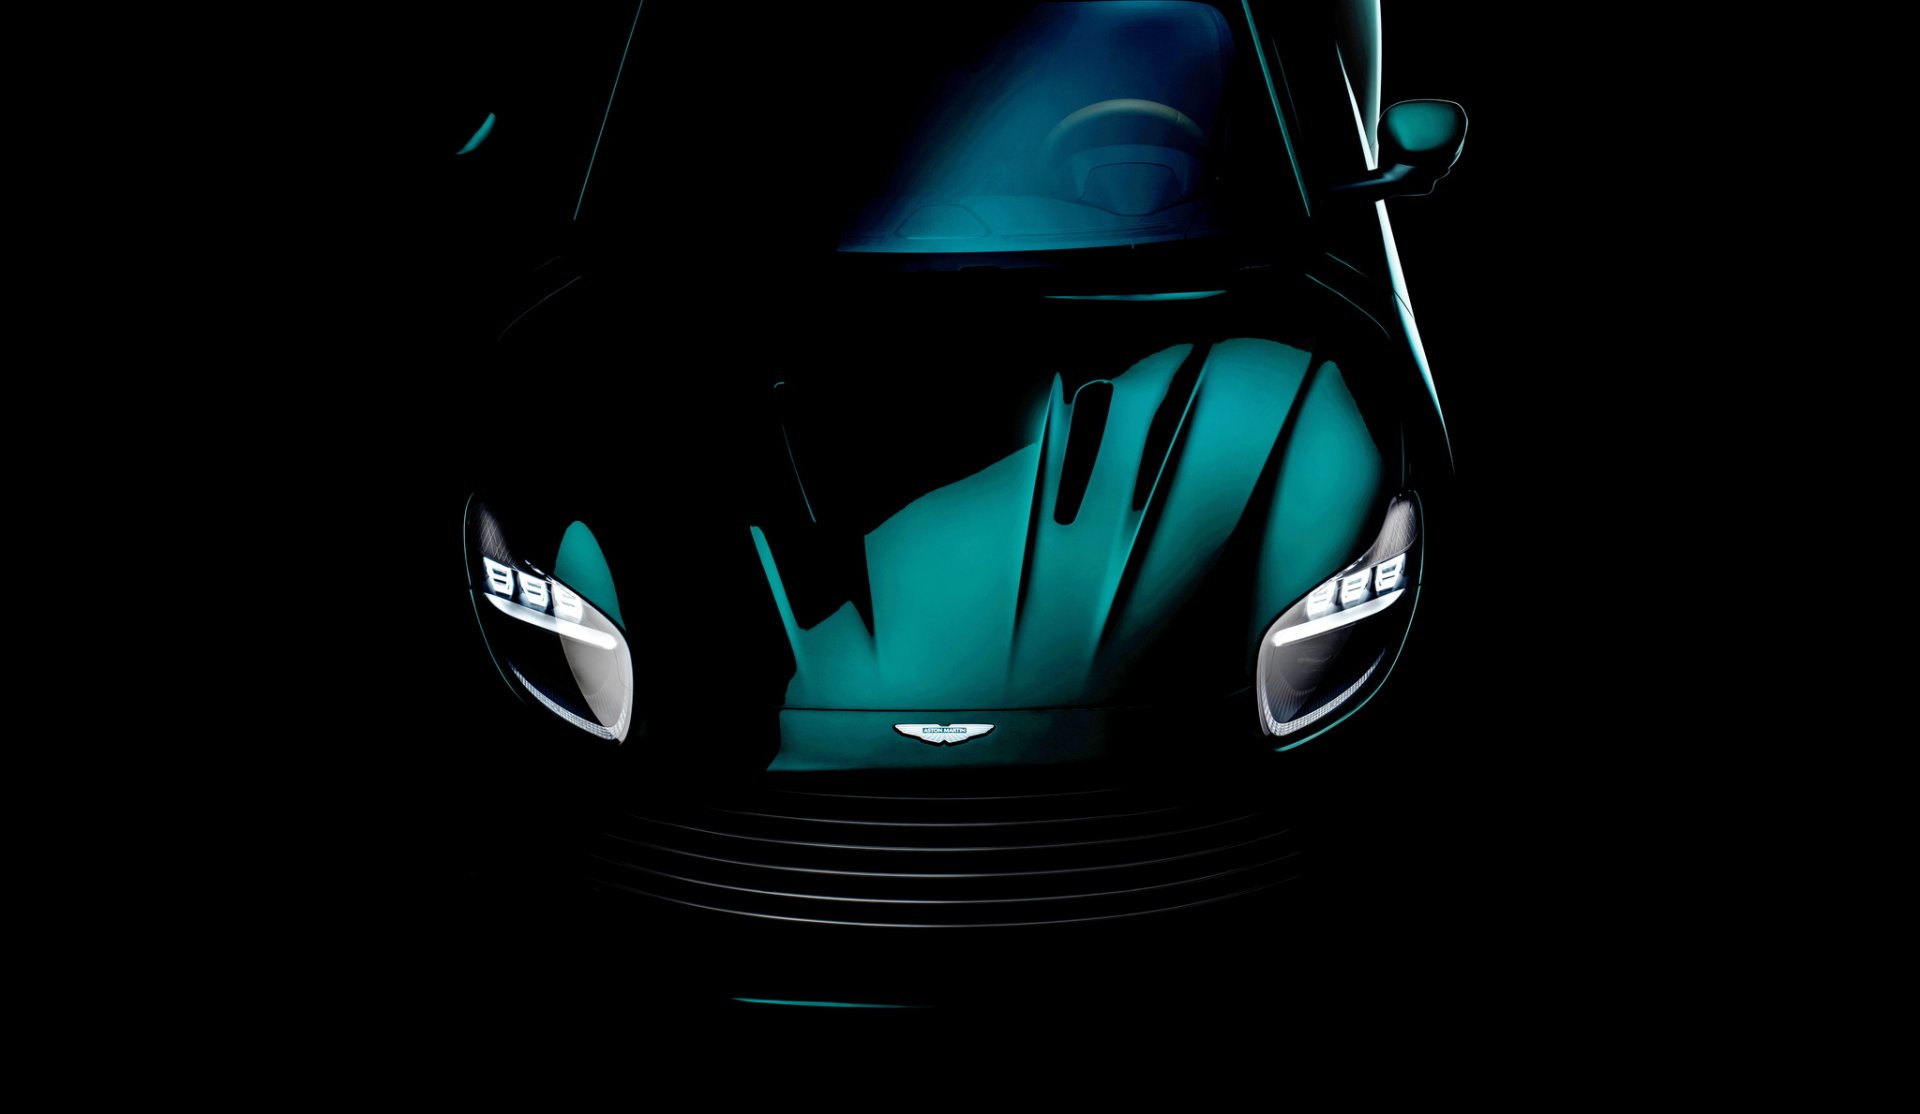 Aston Martin ปล่อยภาพ DB รุ่นใหม่ เตรียมเปิดตัว 24 พ.ค. นี้